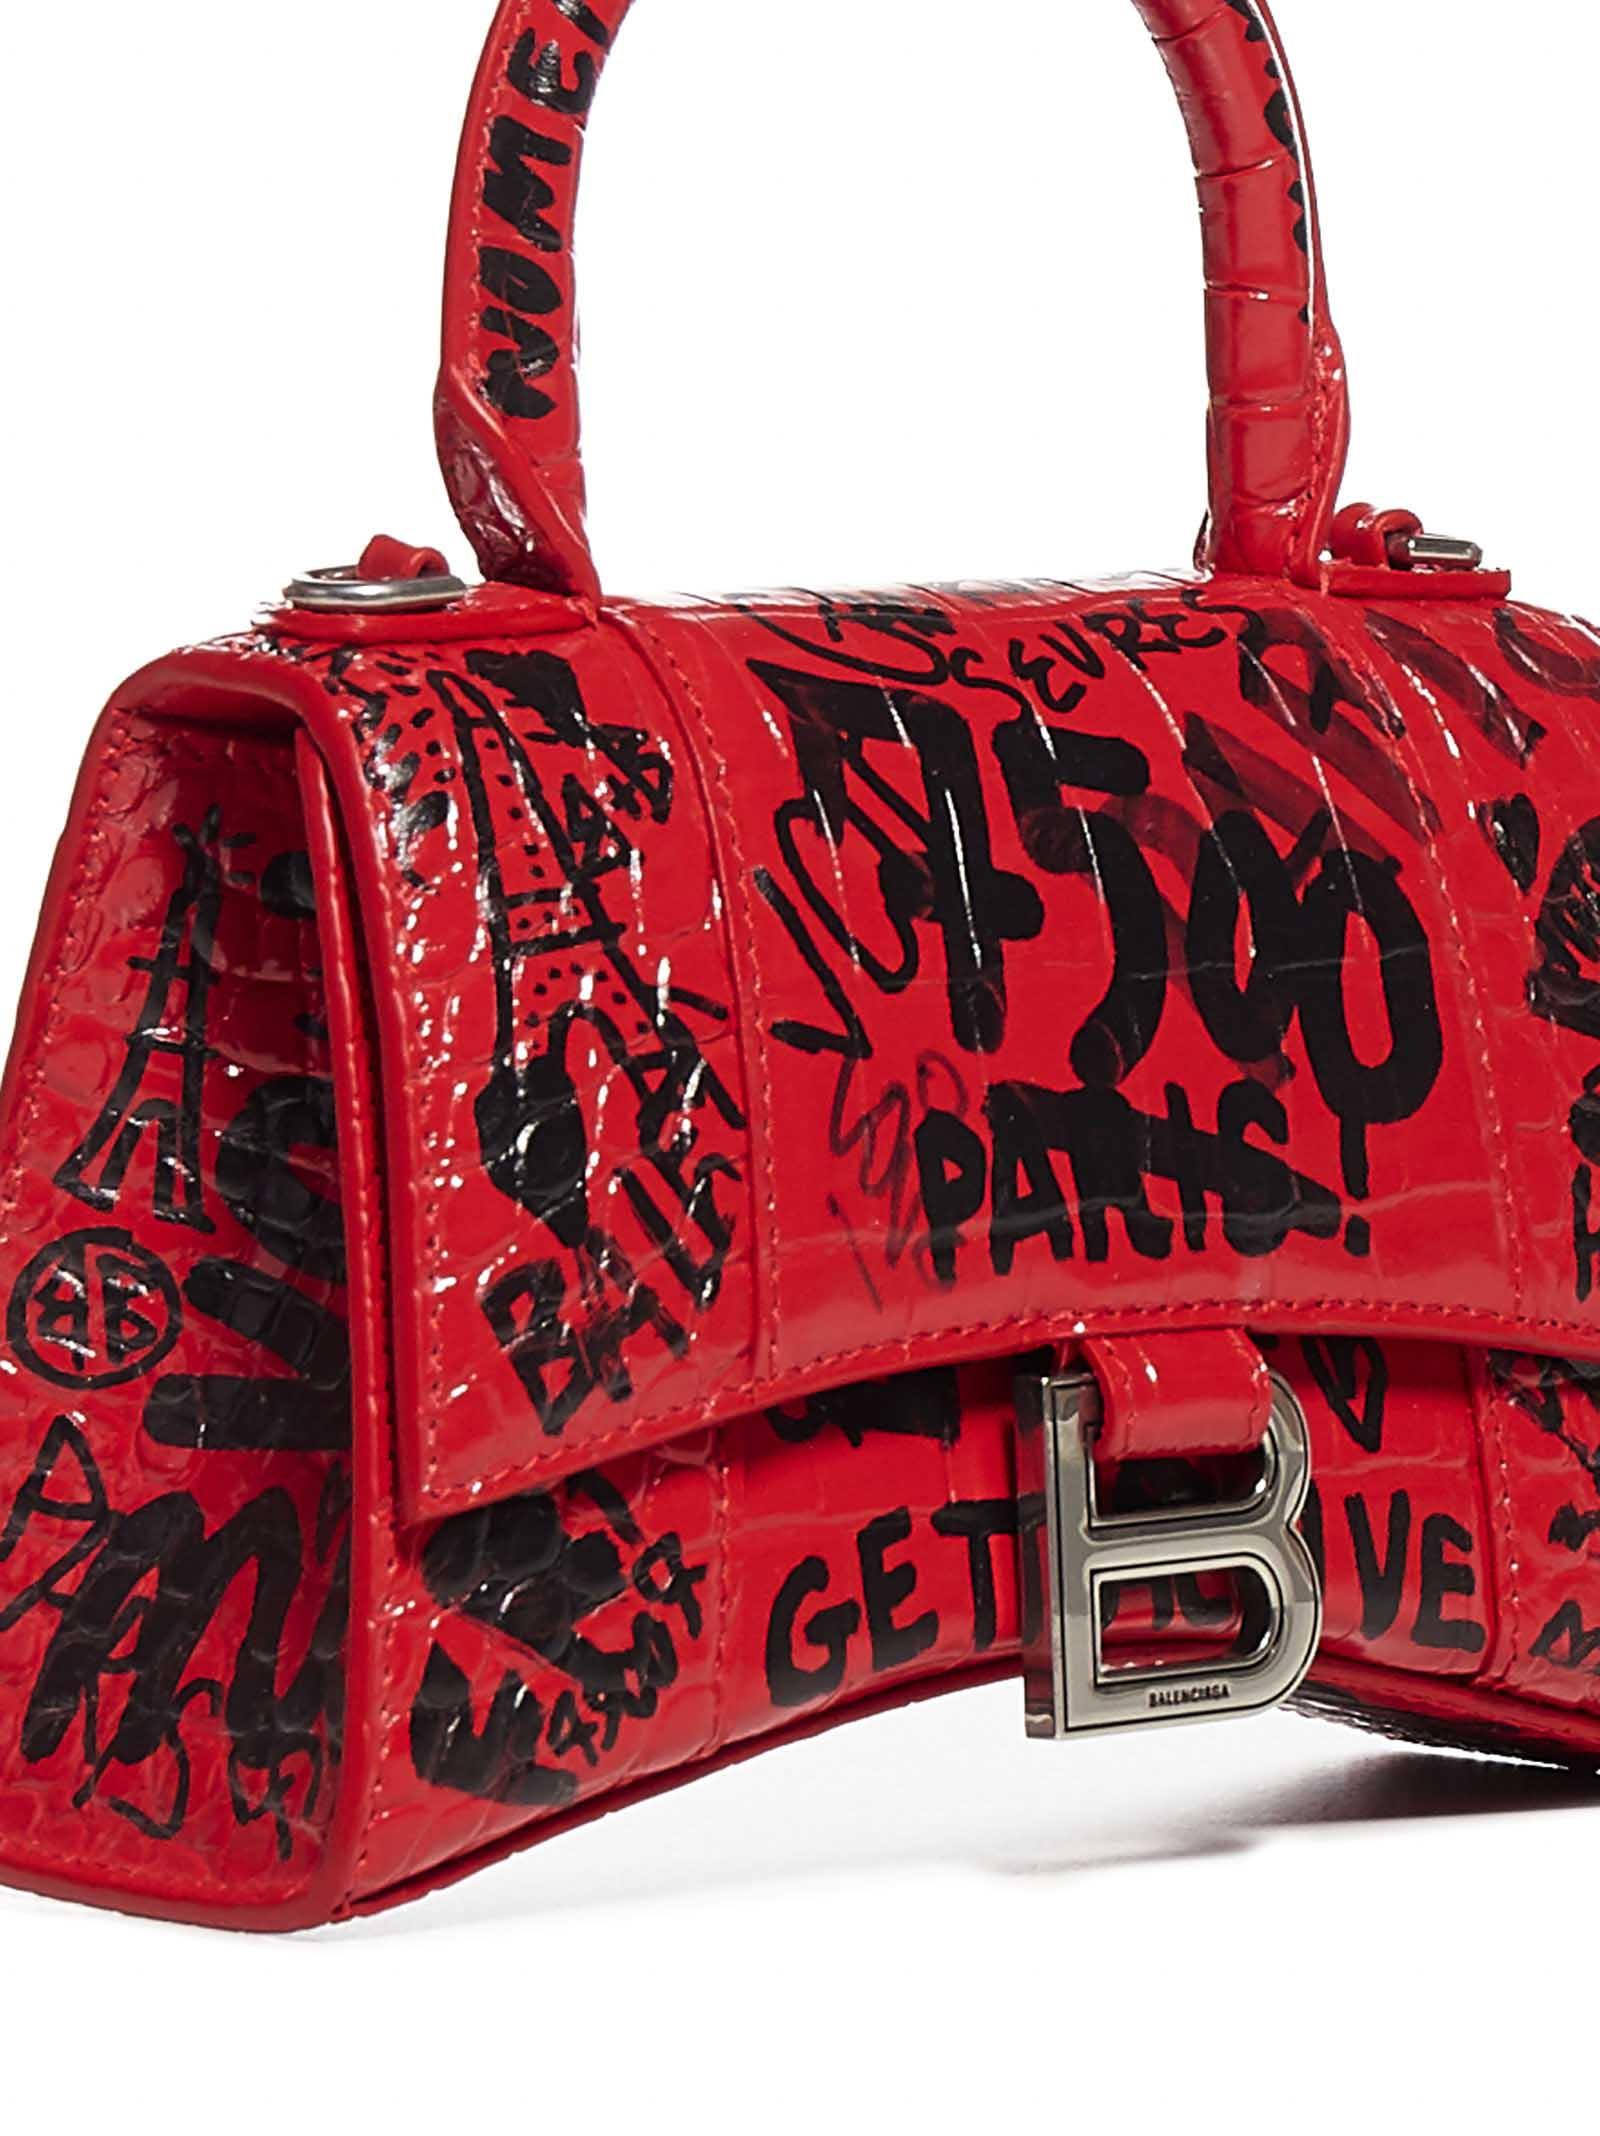 Balenciaga Mini City Graffiti Print Croco Leather Bag in Red